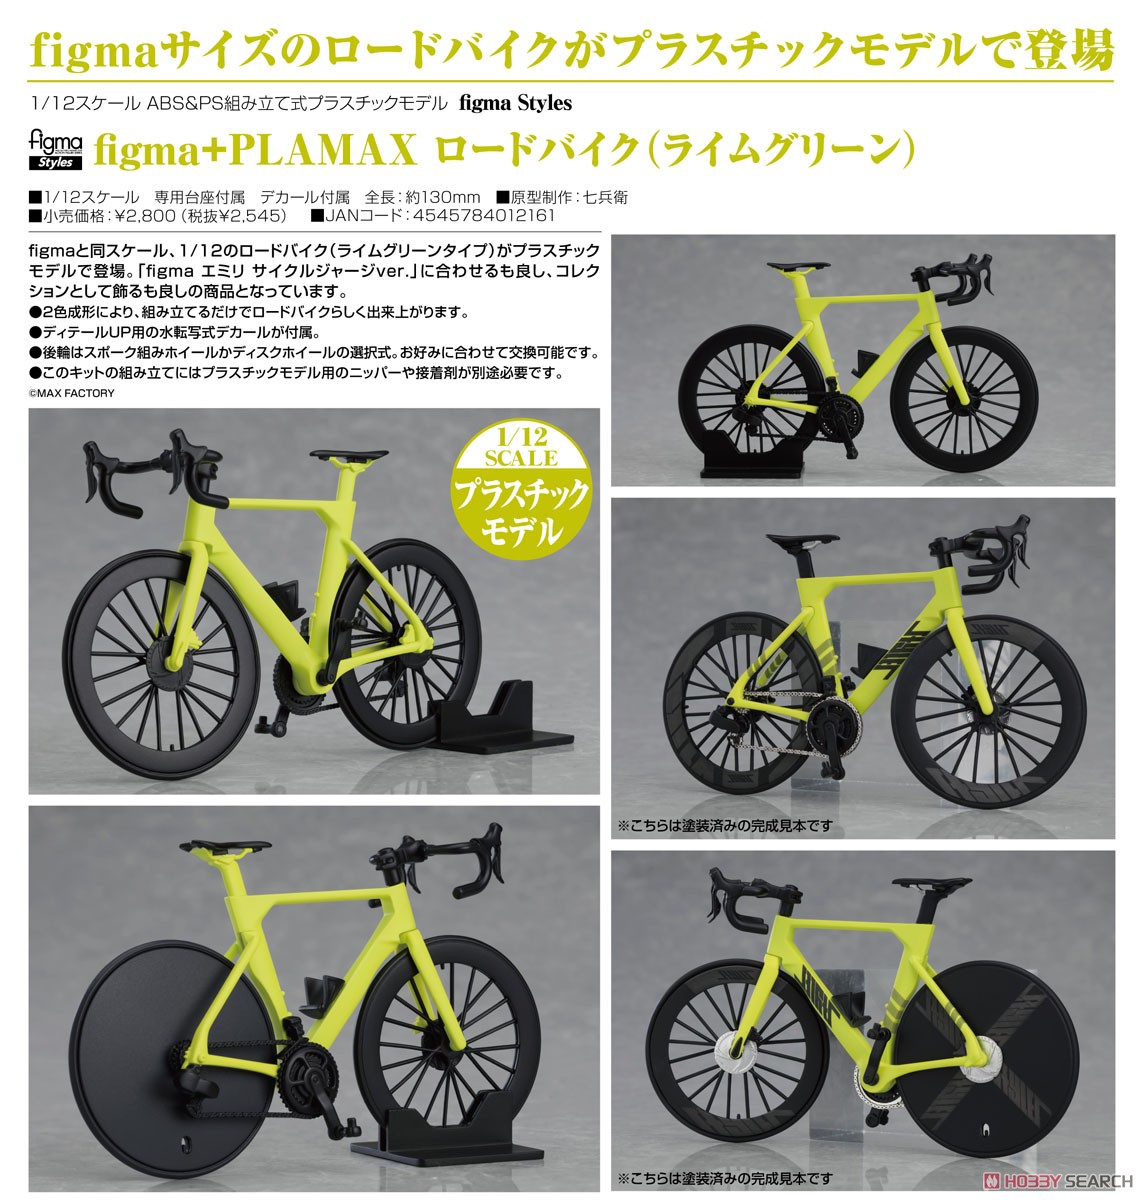 figma Styles『ロードバイク（ライムグリーン）』figma+PLAMAX プラモデル-006